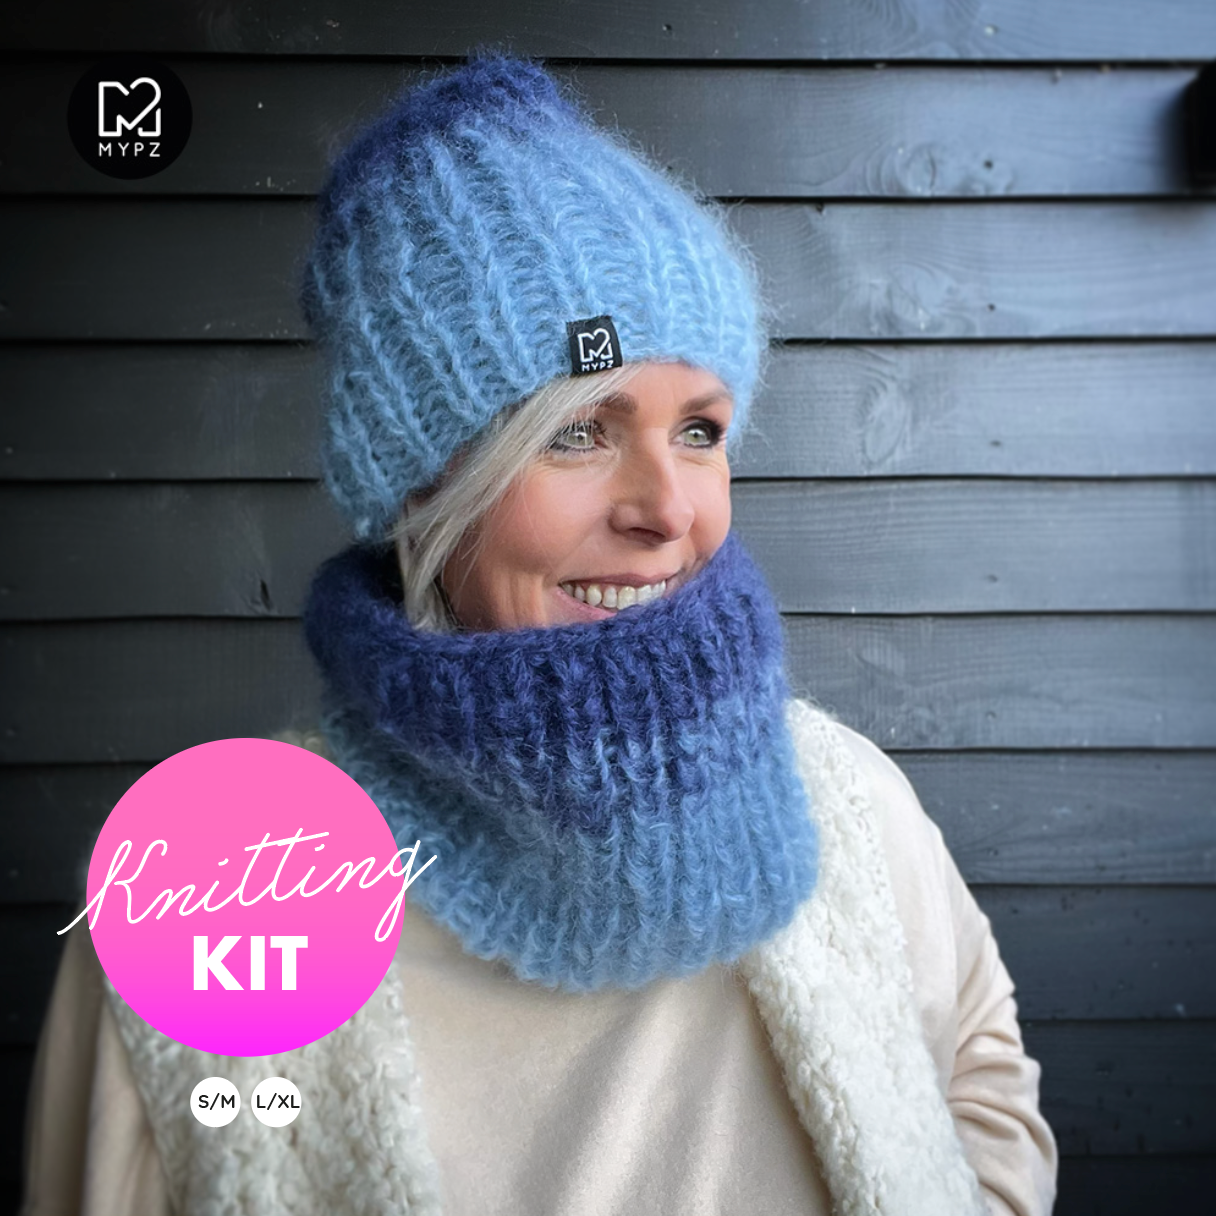 Knitting kits - Hats, scarfs & mittens